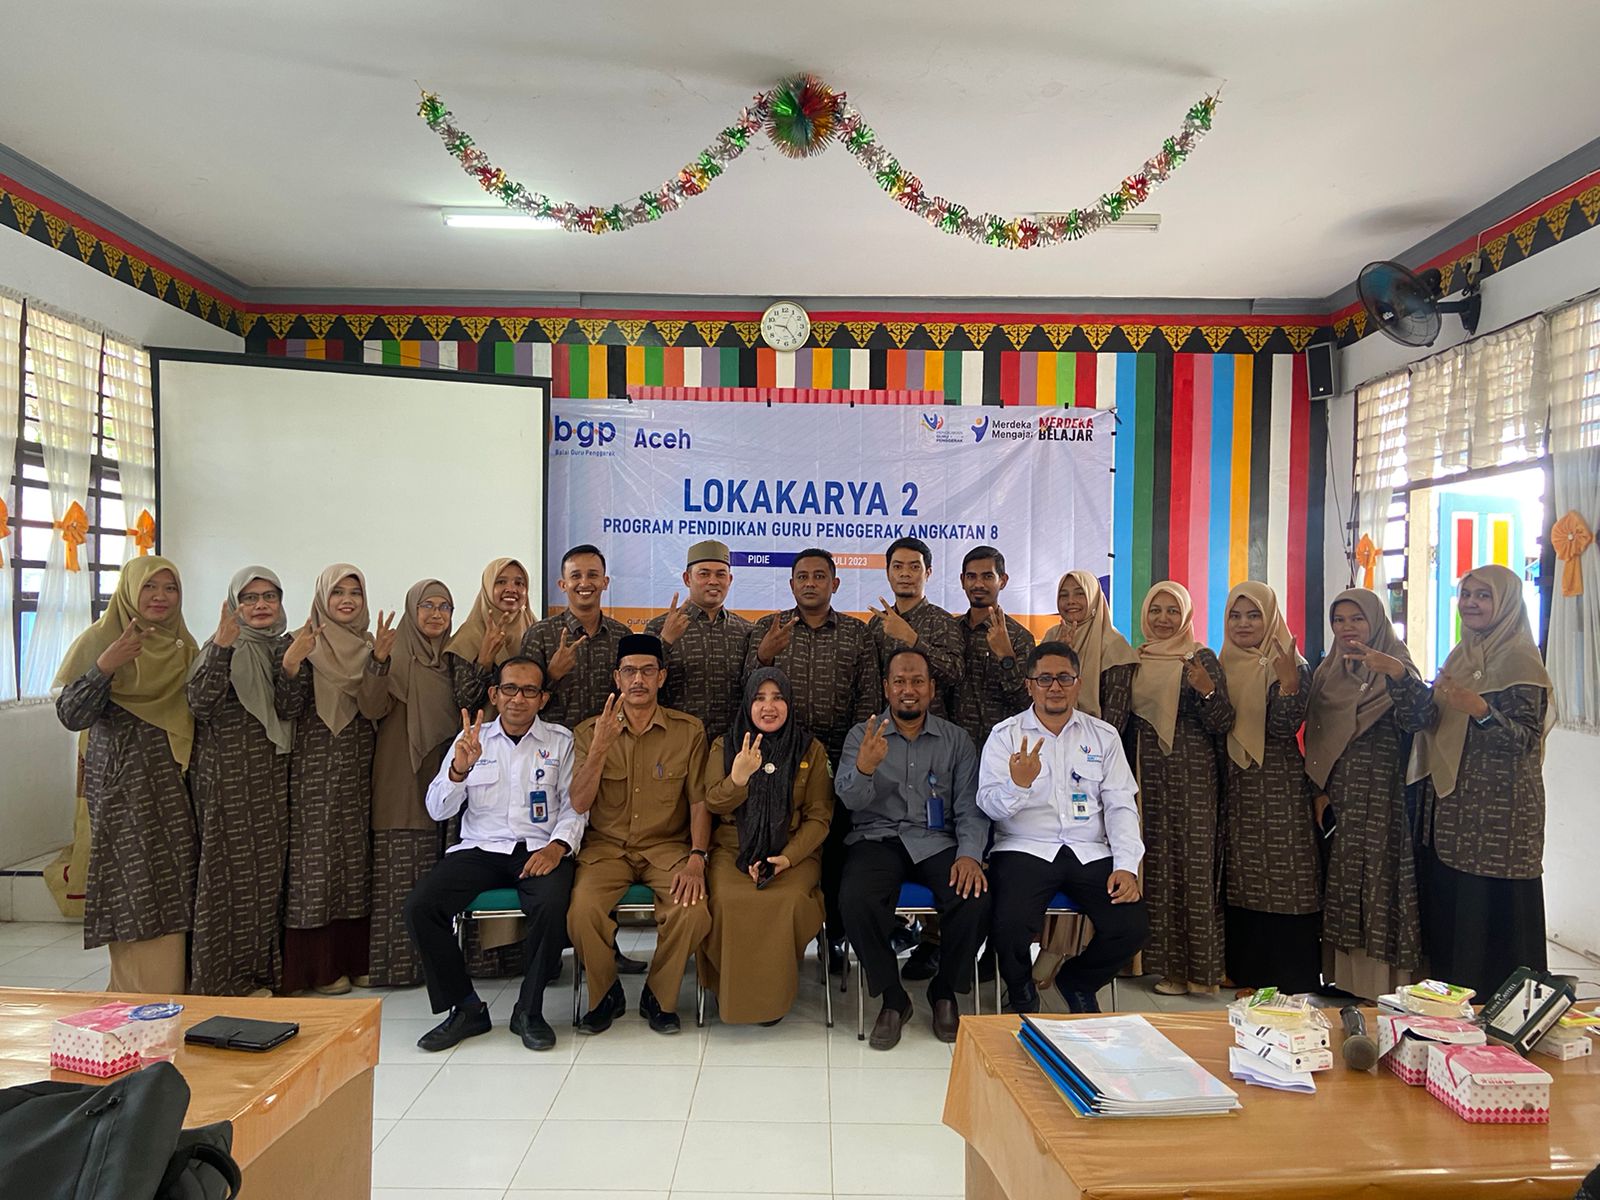 Lokakarya 2 Program Guru Penggerak Angkatan 8